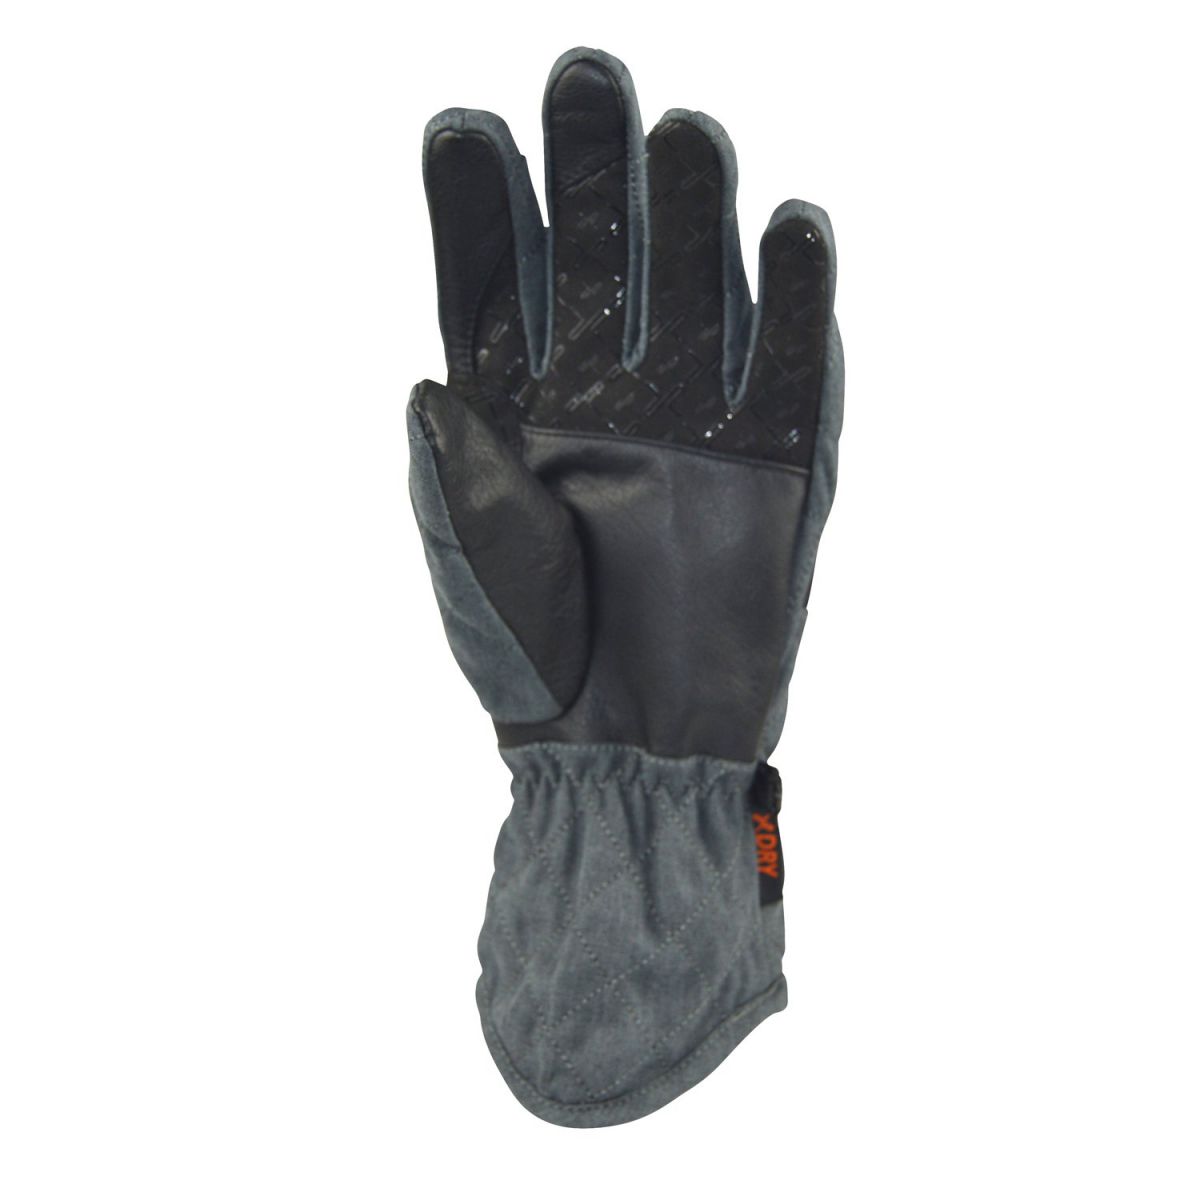 Extremities Altitude Glove